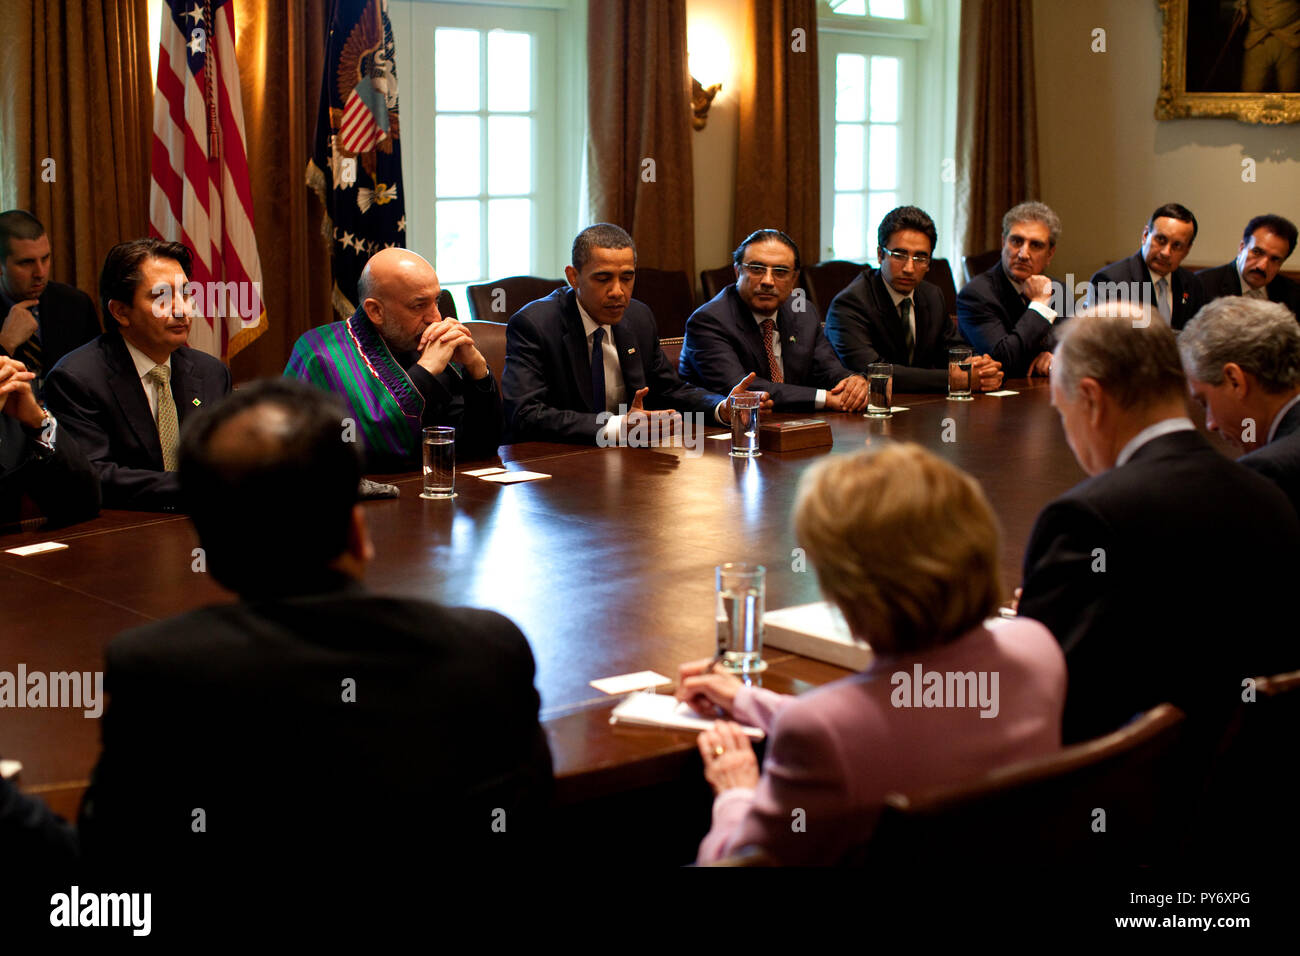 El presidente Barack Obama (centro) con el presidente afgano Karzai y Zardari, Presidente de Pakistán durante una reunión trilateral Afghan-Pakistanen sala Gabinete el 6 de mayo de 2009. Foto oficial de la Casa Blanca por Pete Souza Foto de stock